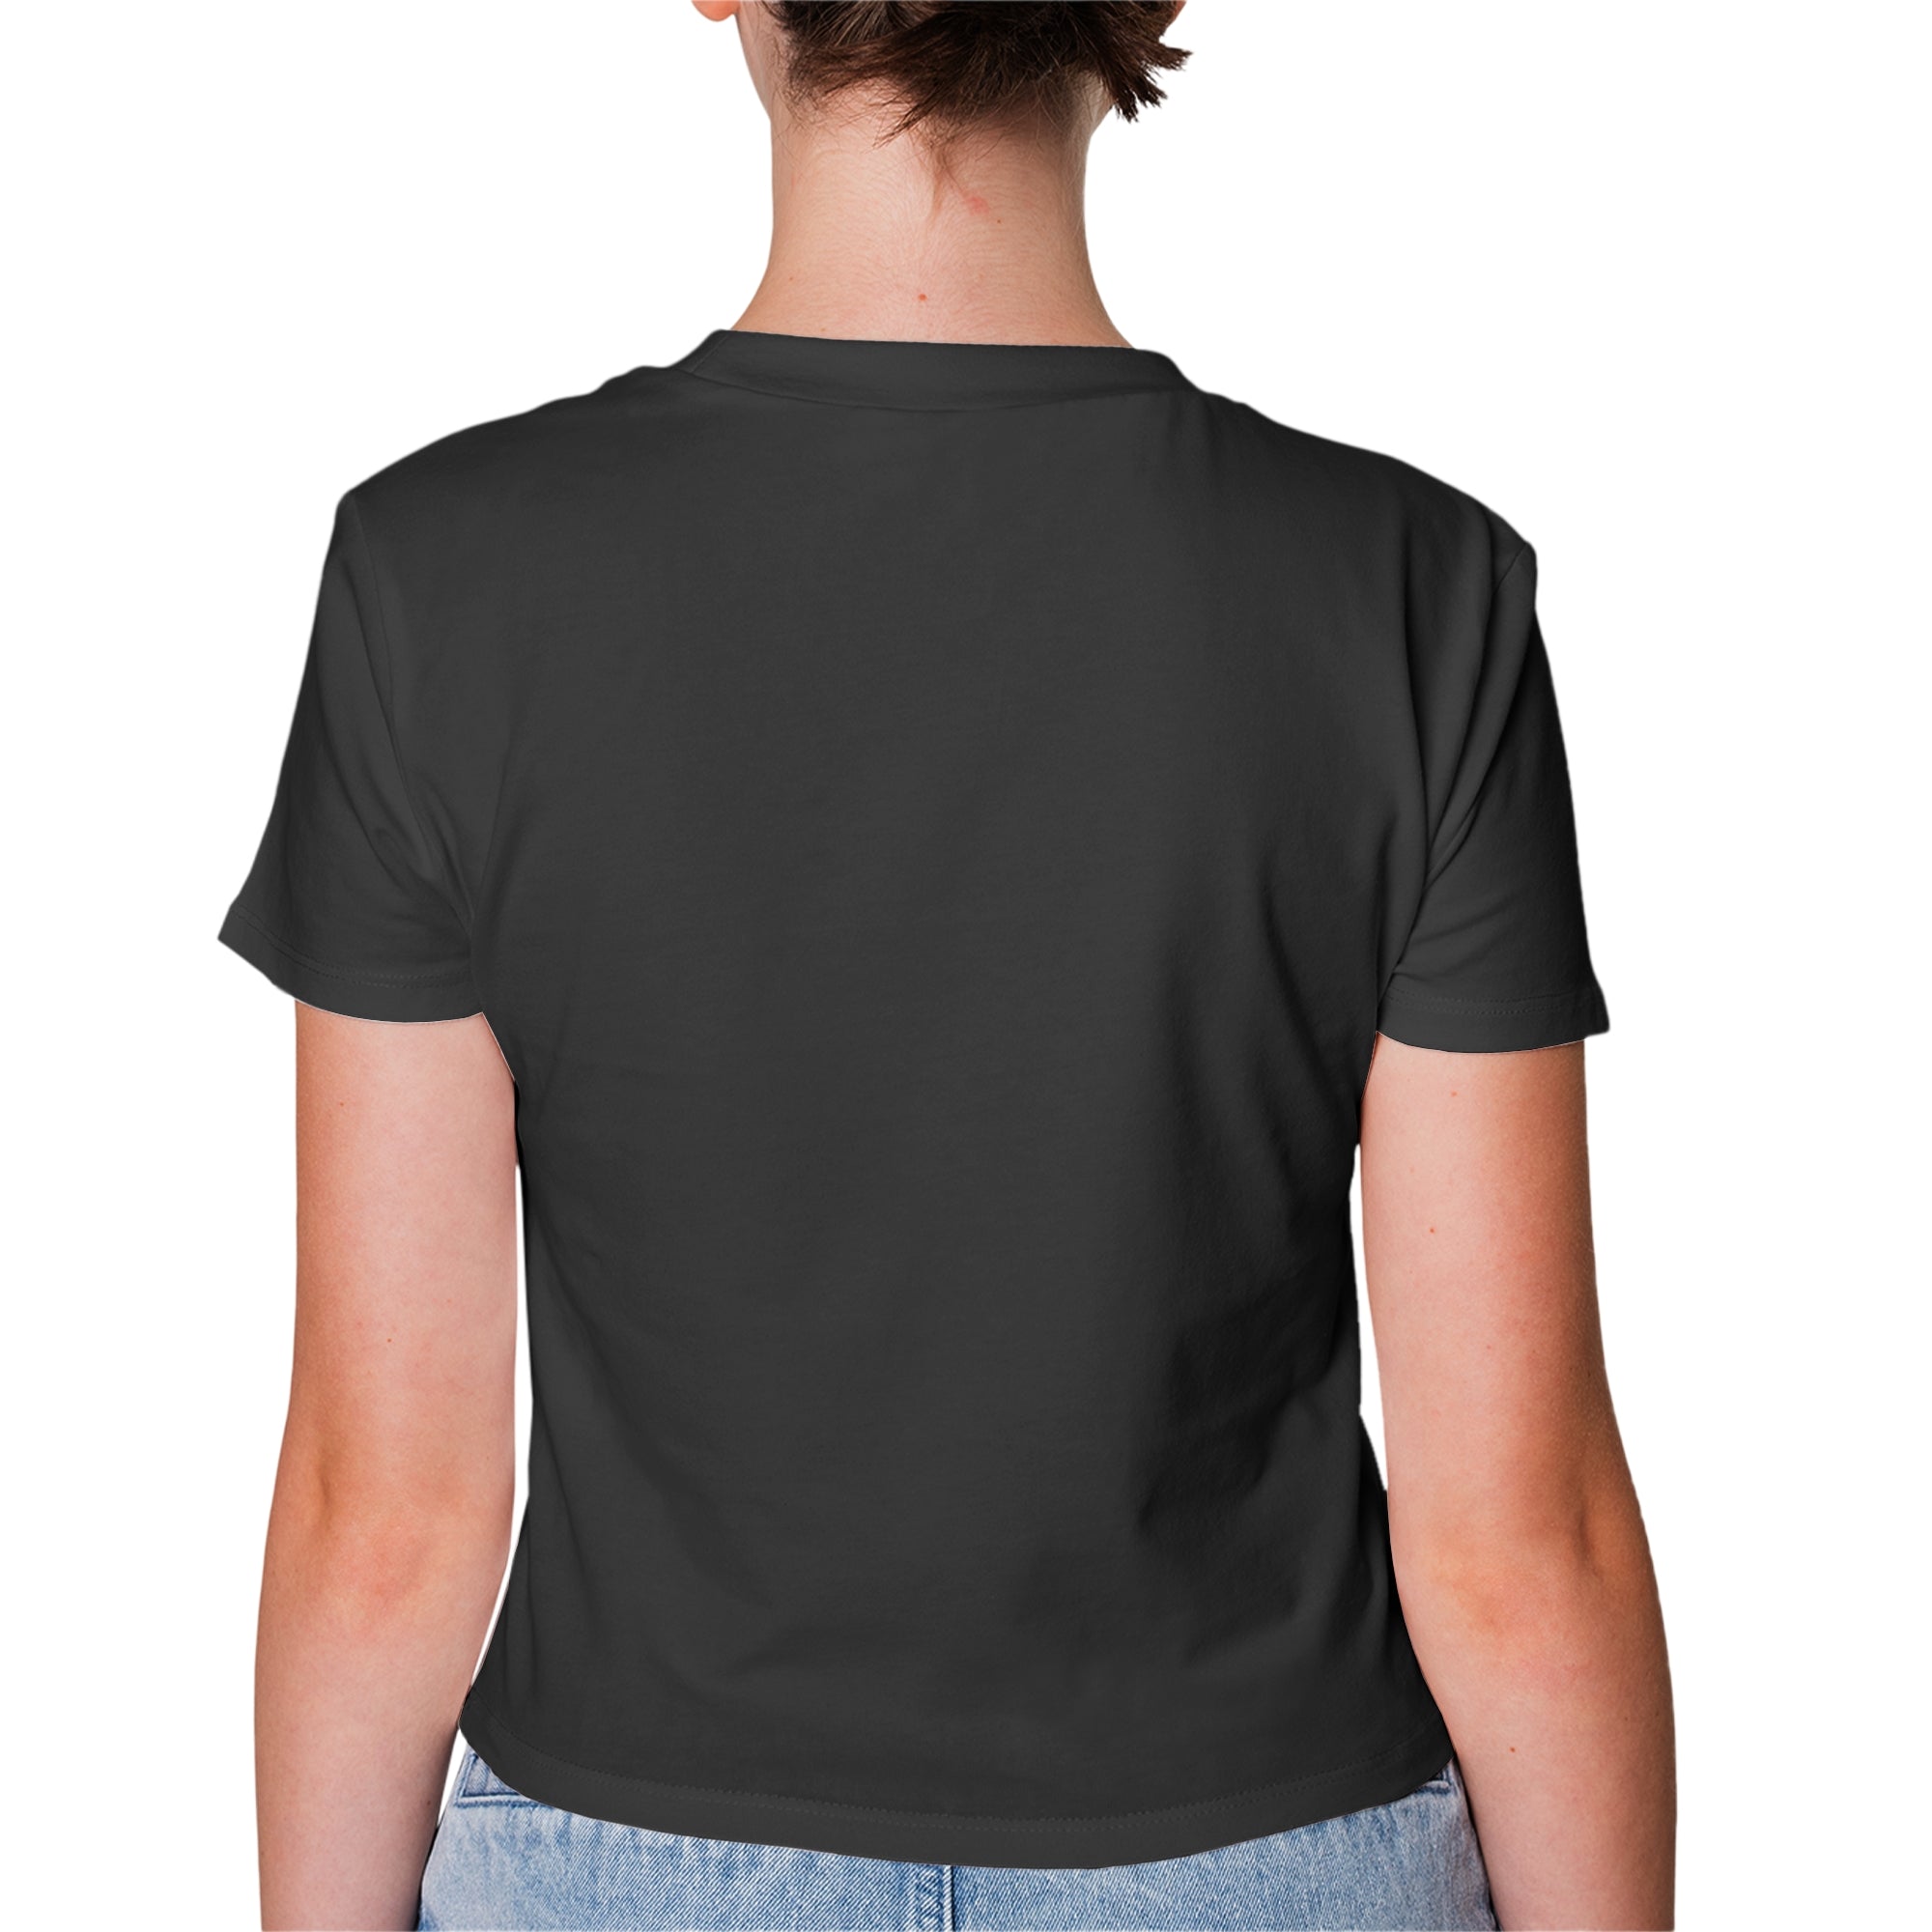 Charcoal Grey T-Shirt For Women